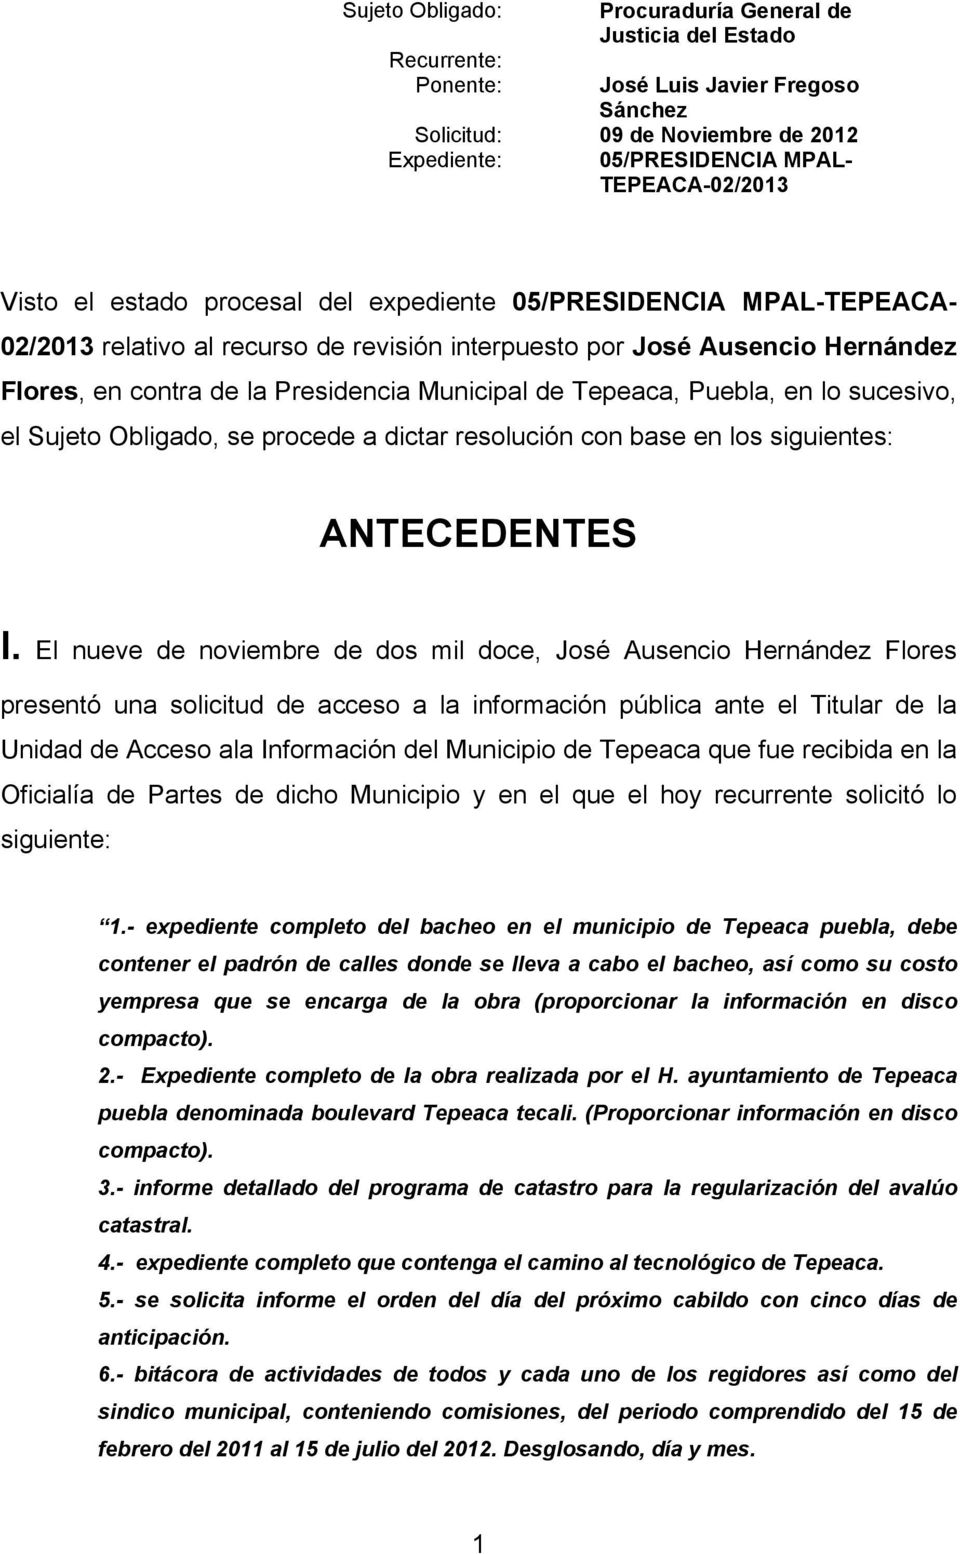 El nueve de noviembre de dos mil doce, José Ausencio Hernández Flores presentó una solicitud de acceso a la información pública ante el Titular de la Unidad de Acceso ala Información del Municipio de